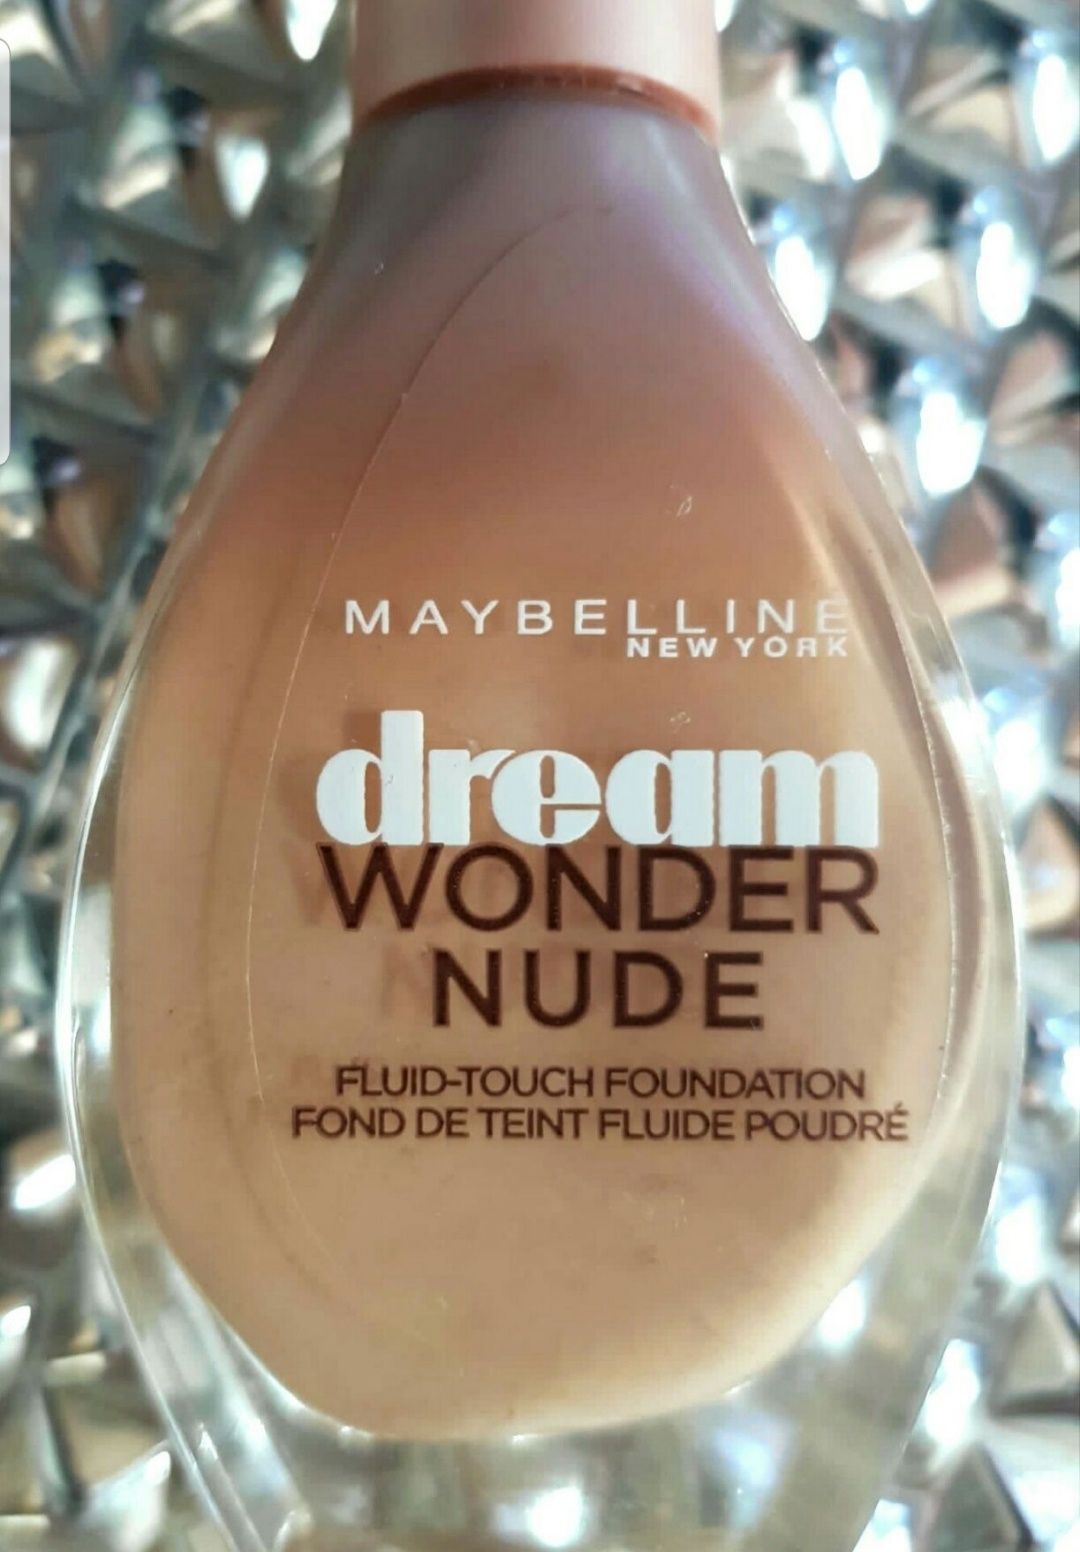 Maybelline Dream Wonder Nude podklad w płynie, nowy